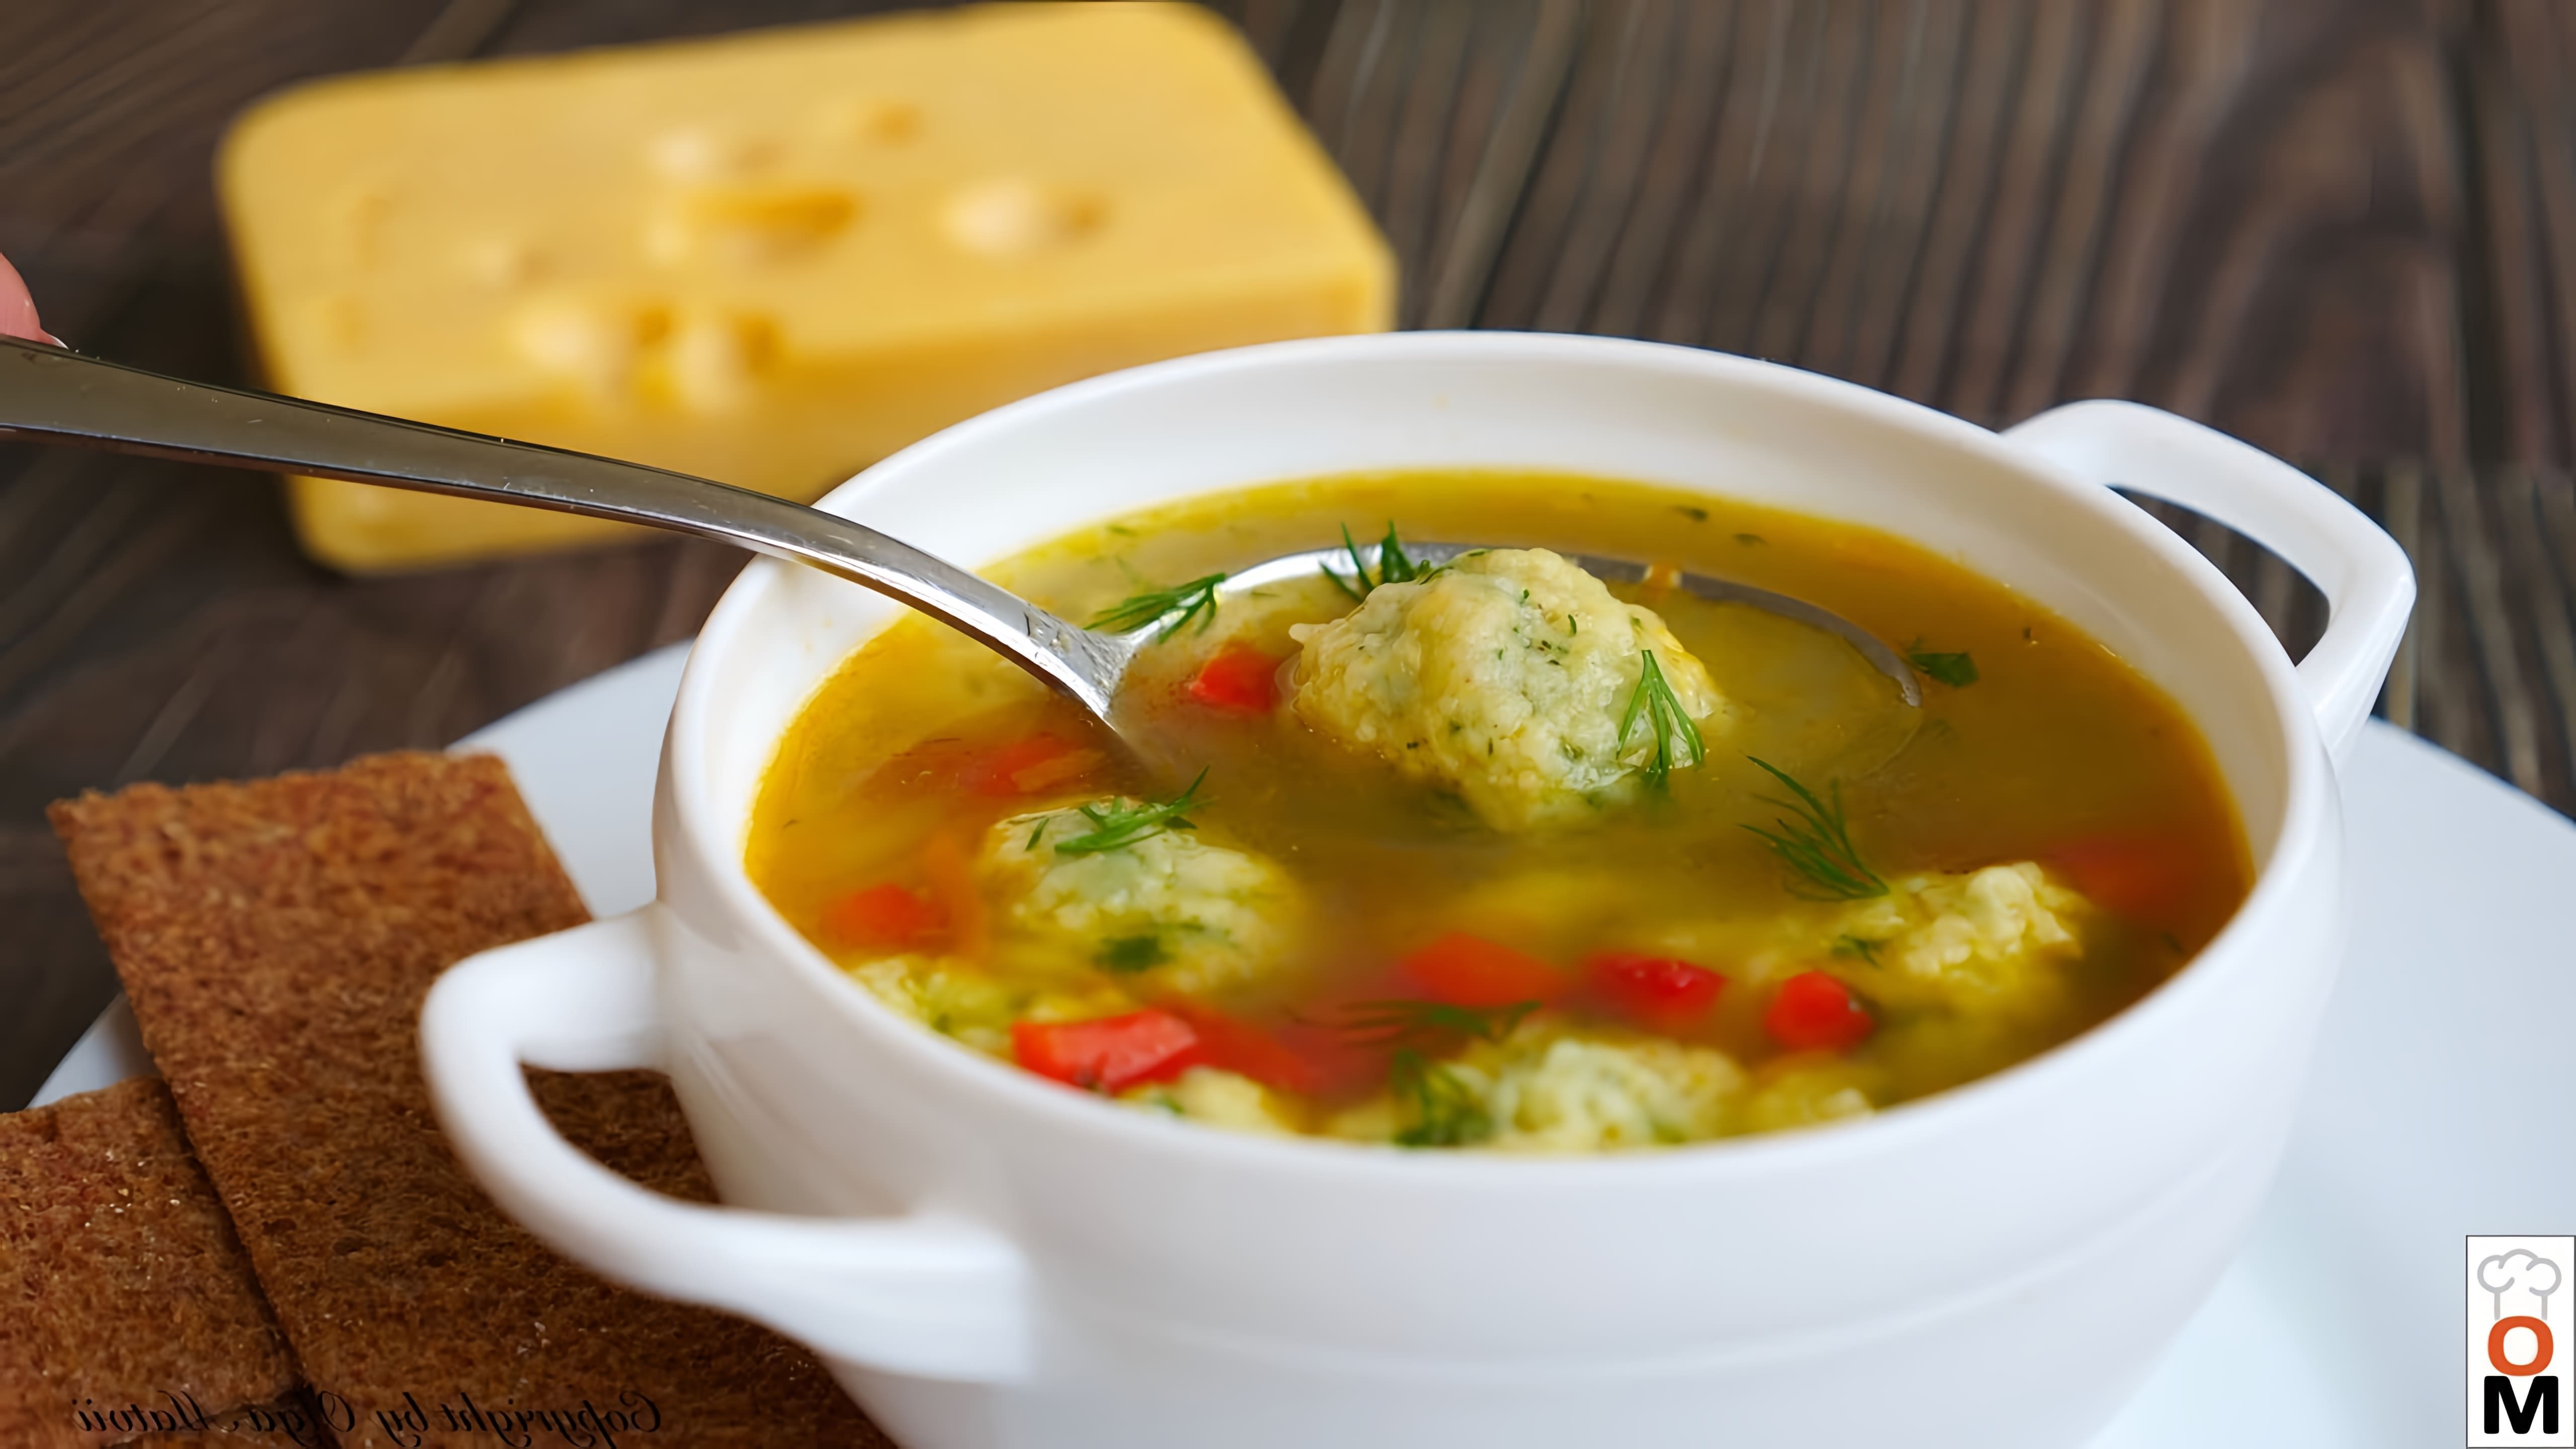 В этом видео демонстрируется процесс приготовления вкусного домашнего супа с сырными клецками